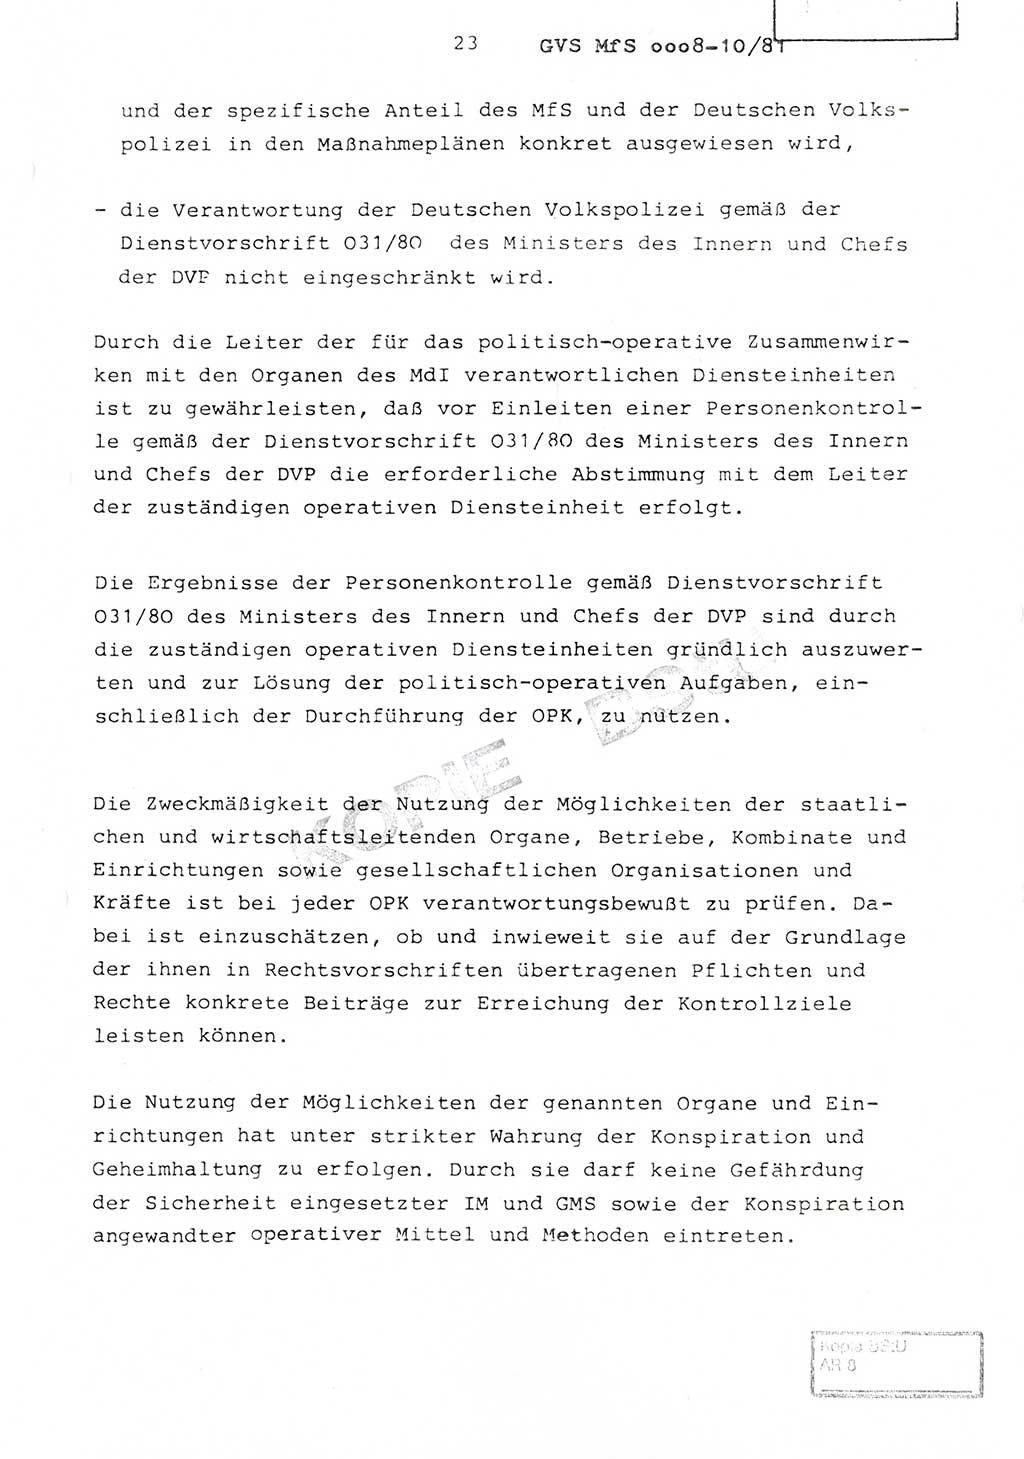 Richtlinie Nr. 1/81 über die operative Personenkontrolle (OPK), Ministerium für Staatssicherheit (MfS) [Deutsche Demokratische Republik (DDR)], Der Minister, Geheime Verschlußsache (GVS) ooo8-10/81, Berlin 1981, Blatt 23 (RL 1/81 OPK DDR MfS Min. GVS ooo8-10/81 1981, Bl. 23)